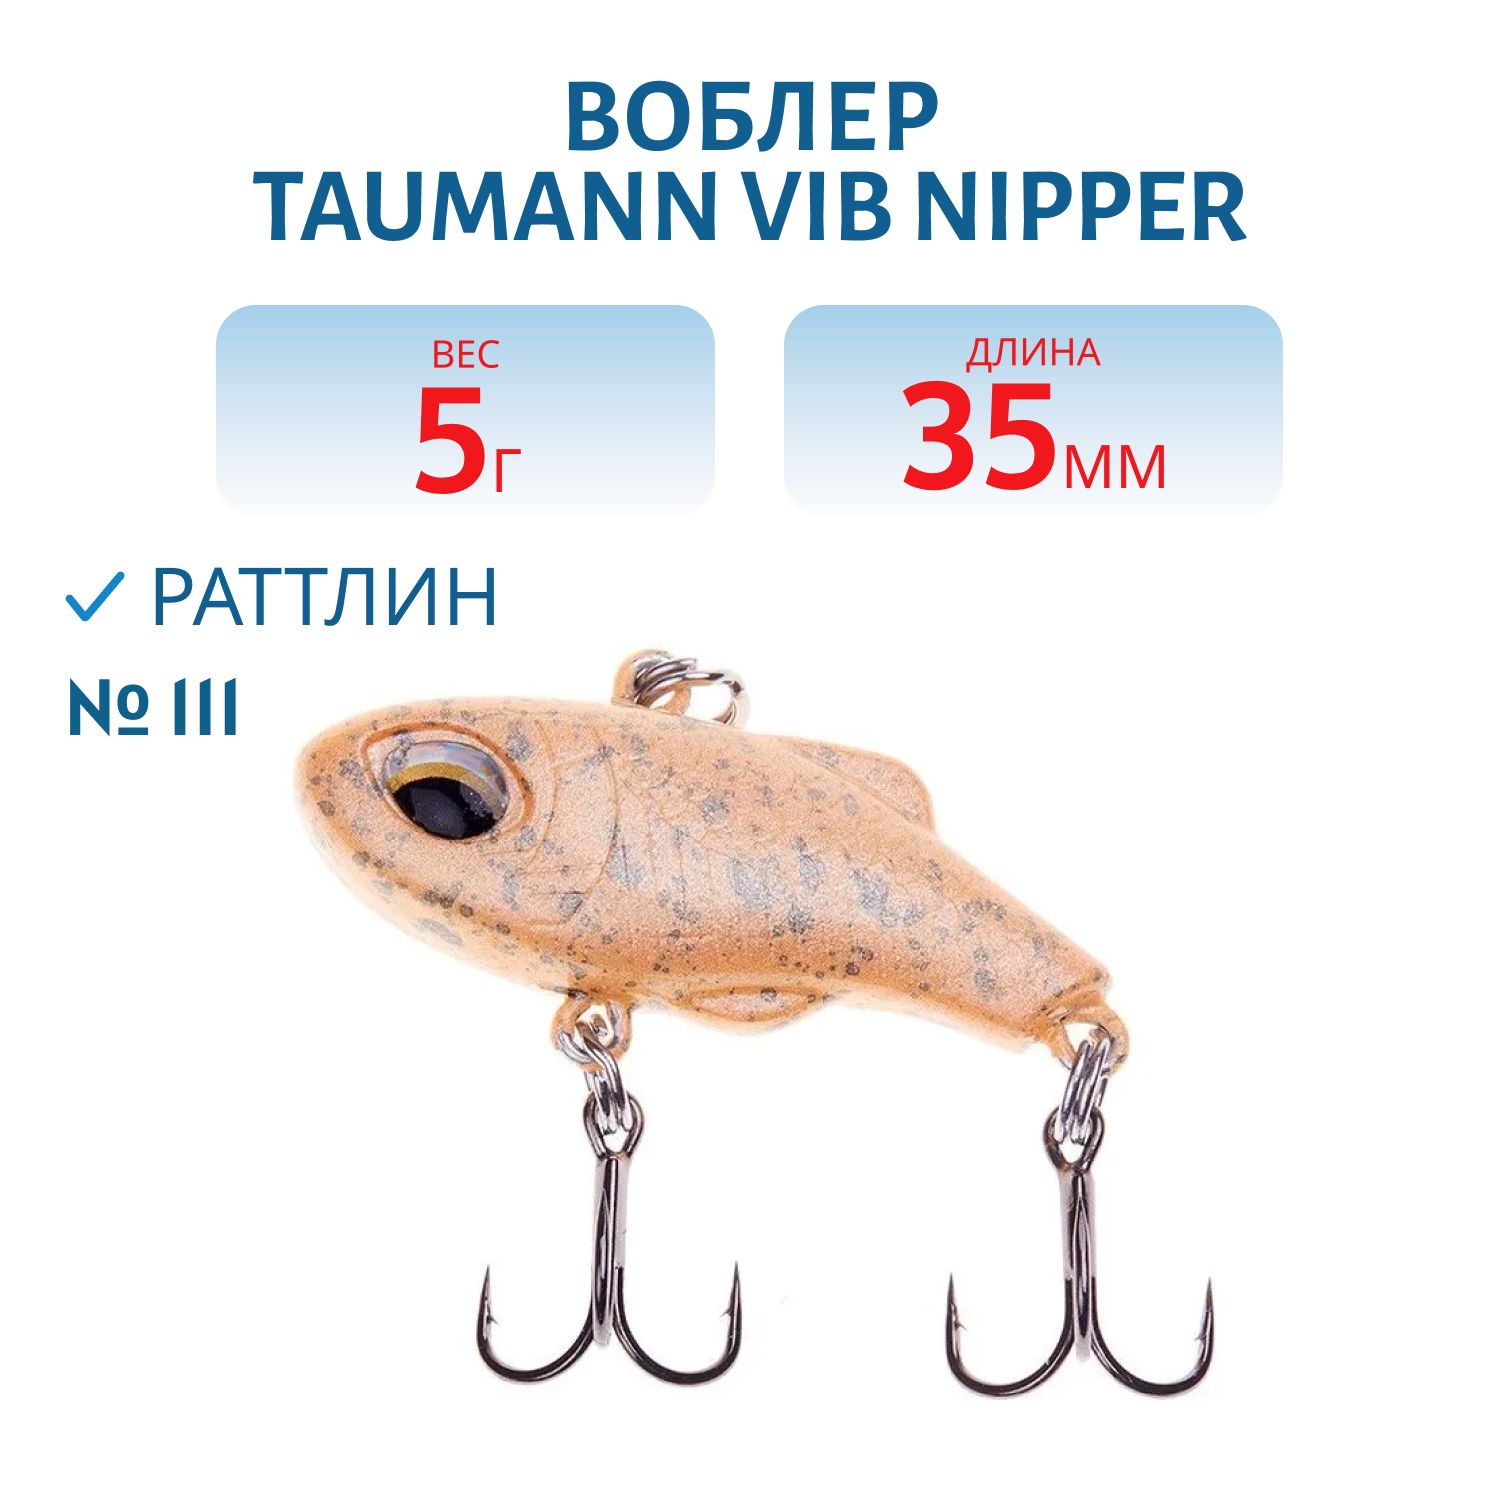 Раттлин TauMANN VIB Nipper 35 (#111)